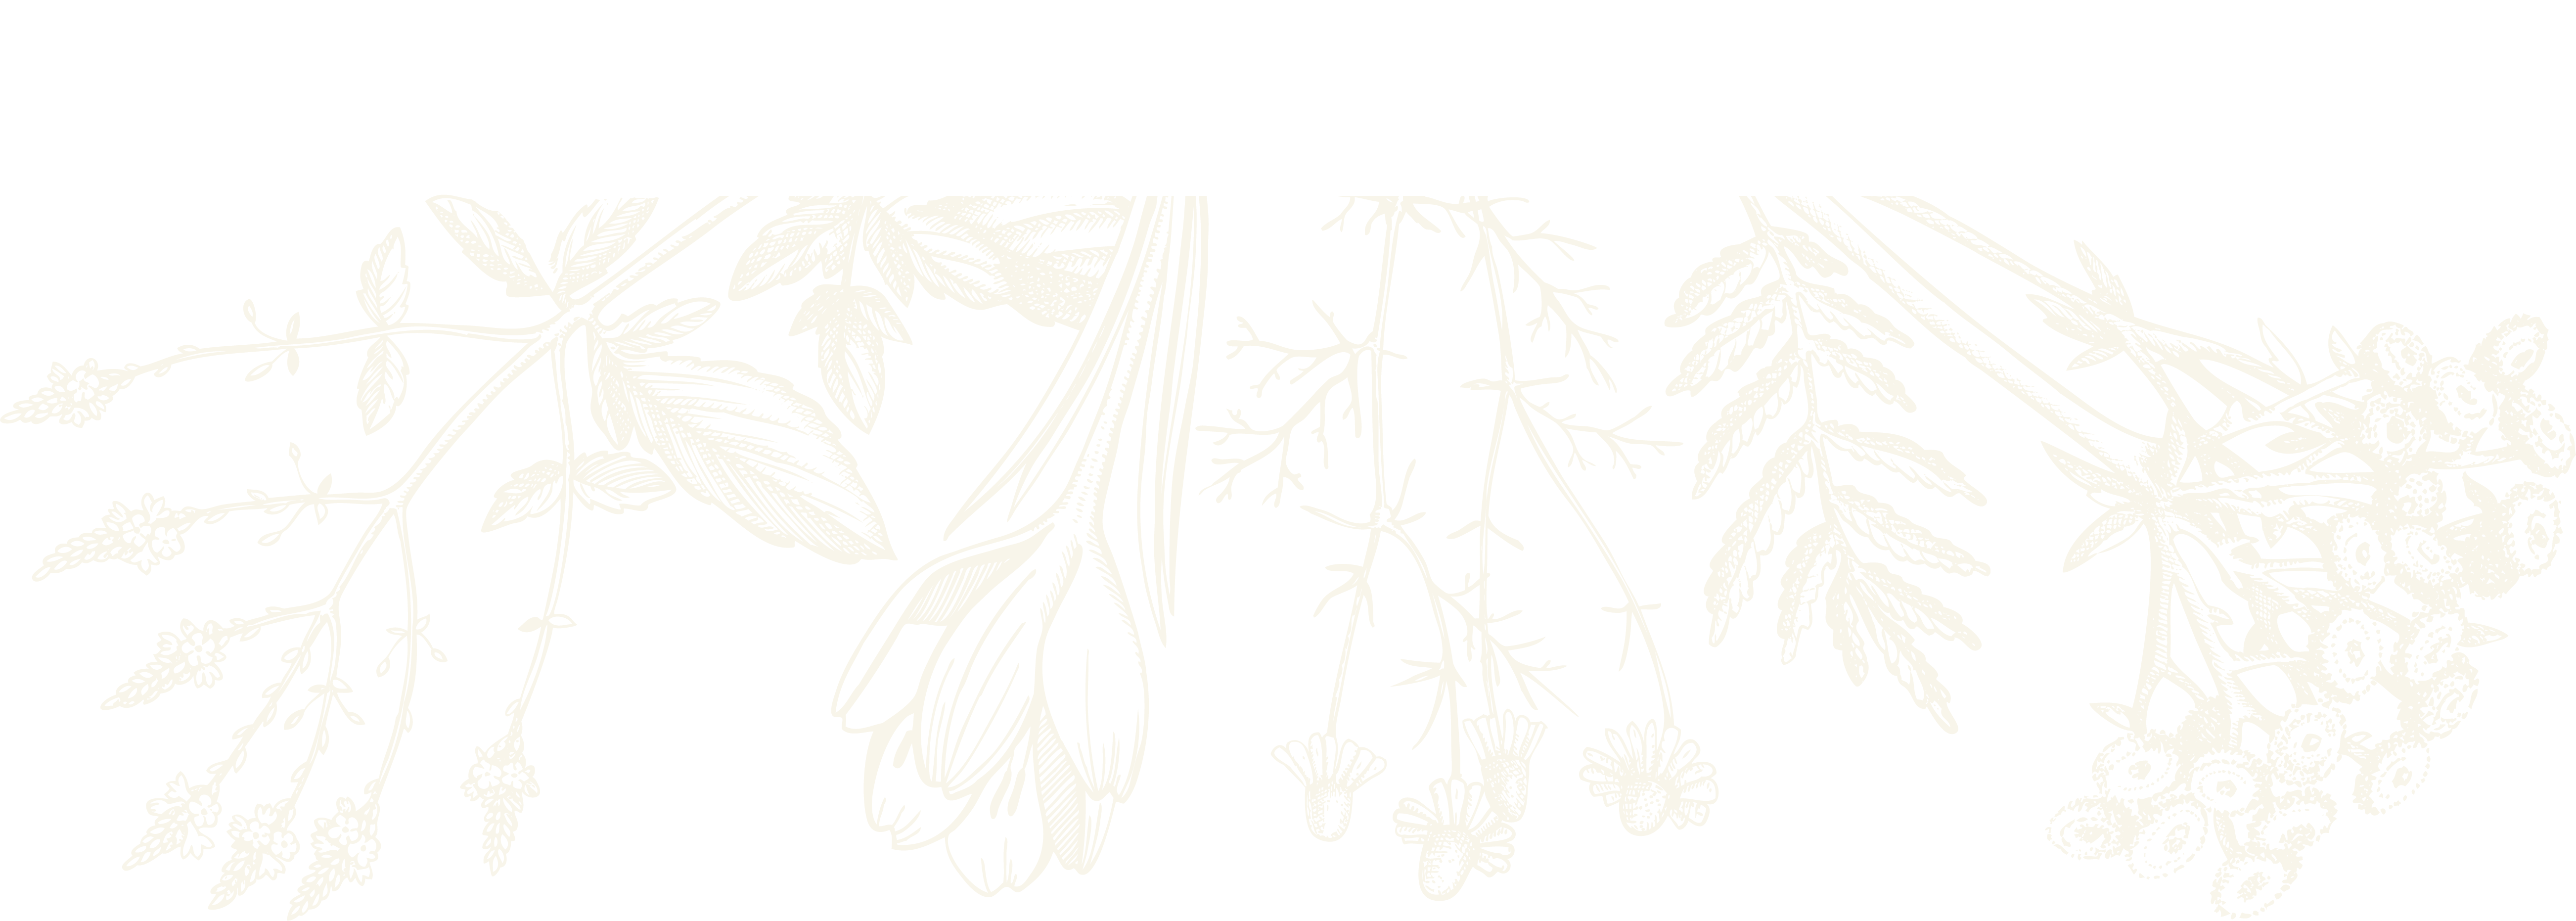 botanical sketch learn herbalism